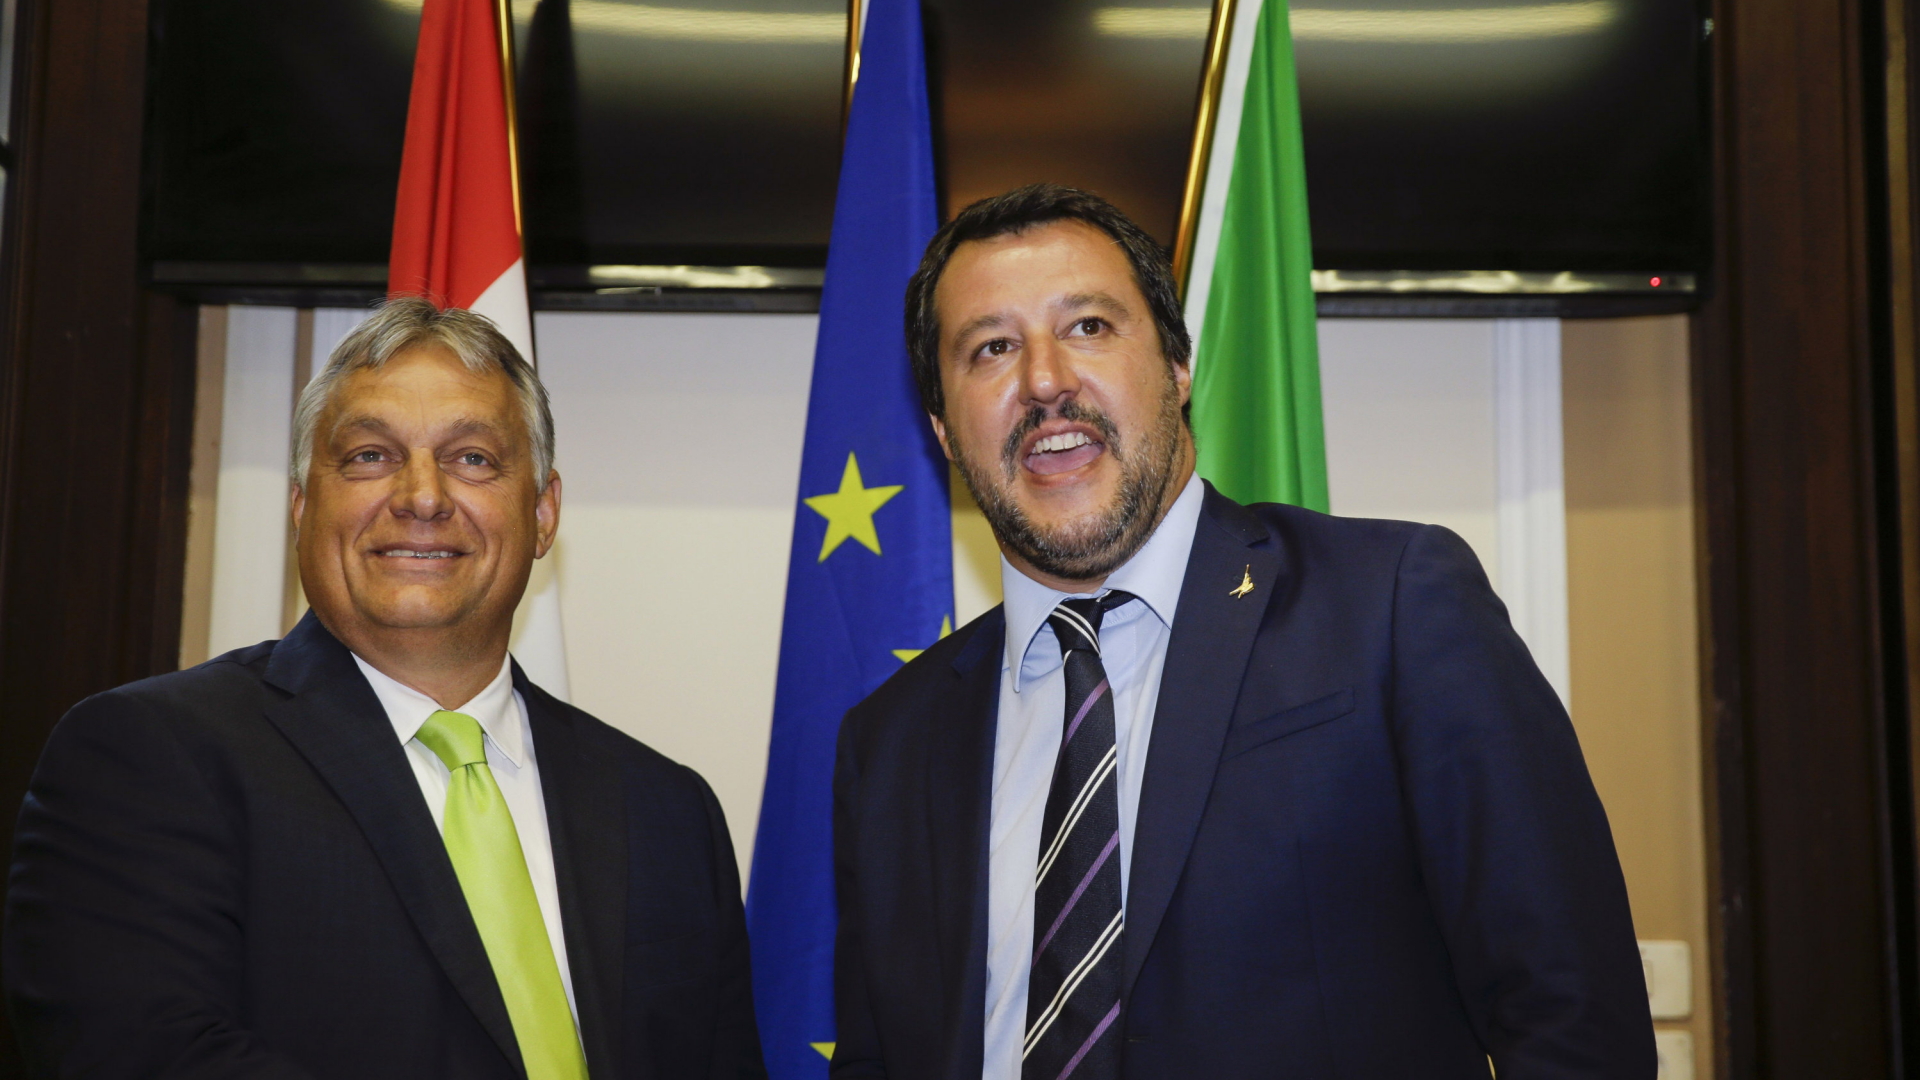 Ungarns Regierungschef Viktor Orban steht lachend neben dem italienischen Innenminister Matteo Salvini.